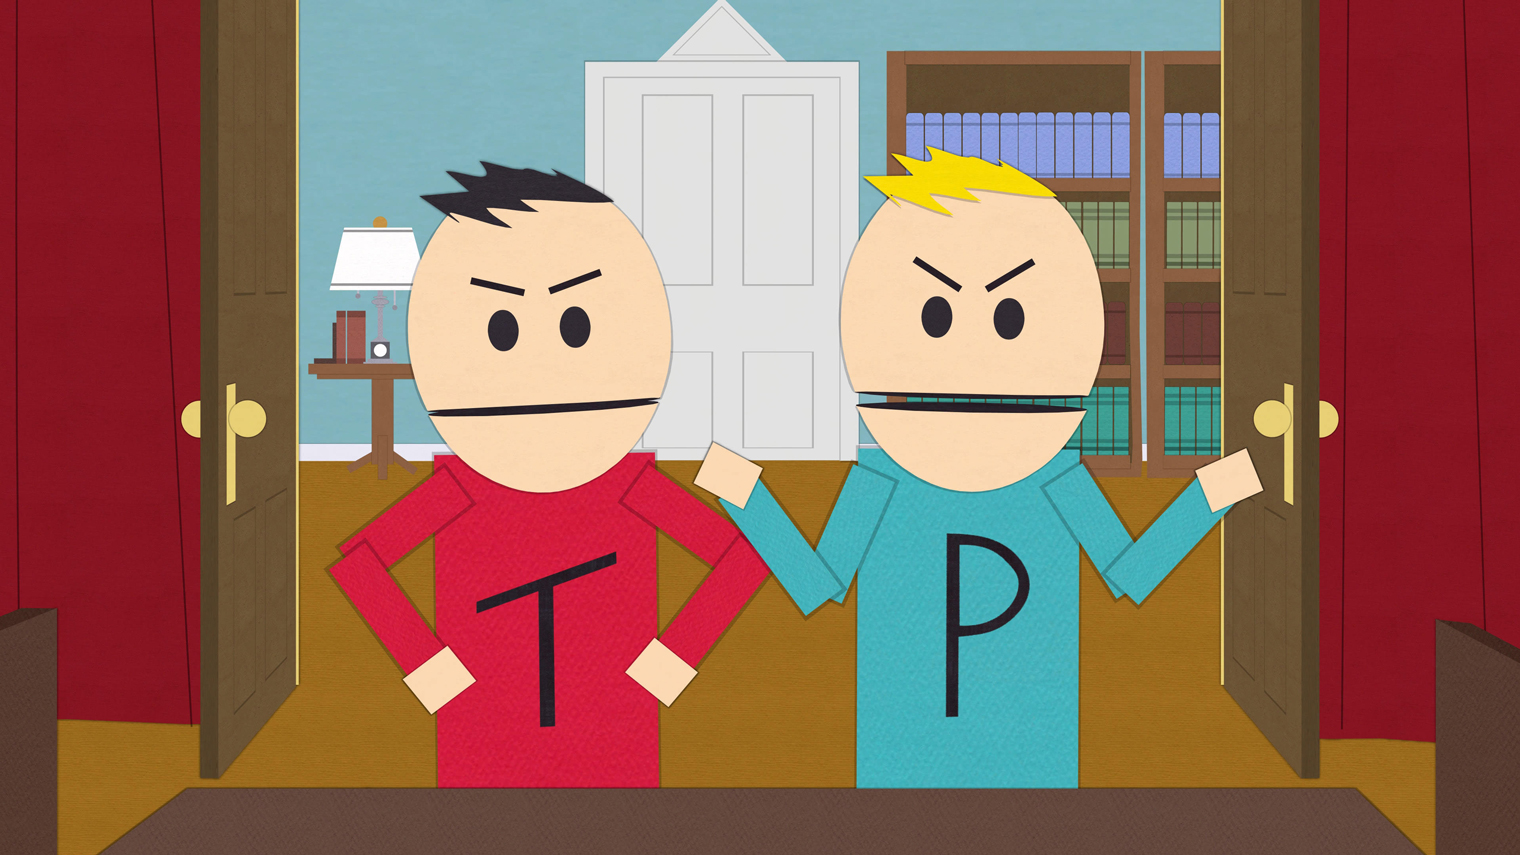 Терренс и Филлип намеренно изображены карикатурными и нелепыми — так в сериале рисуют всех канадцев